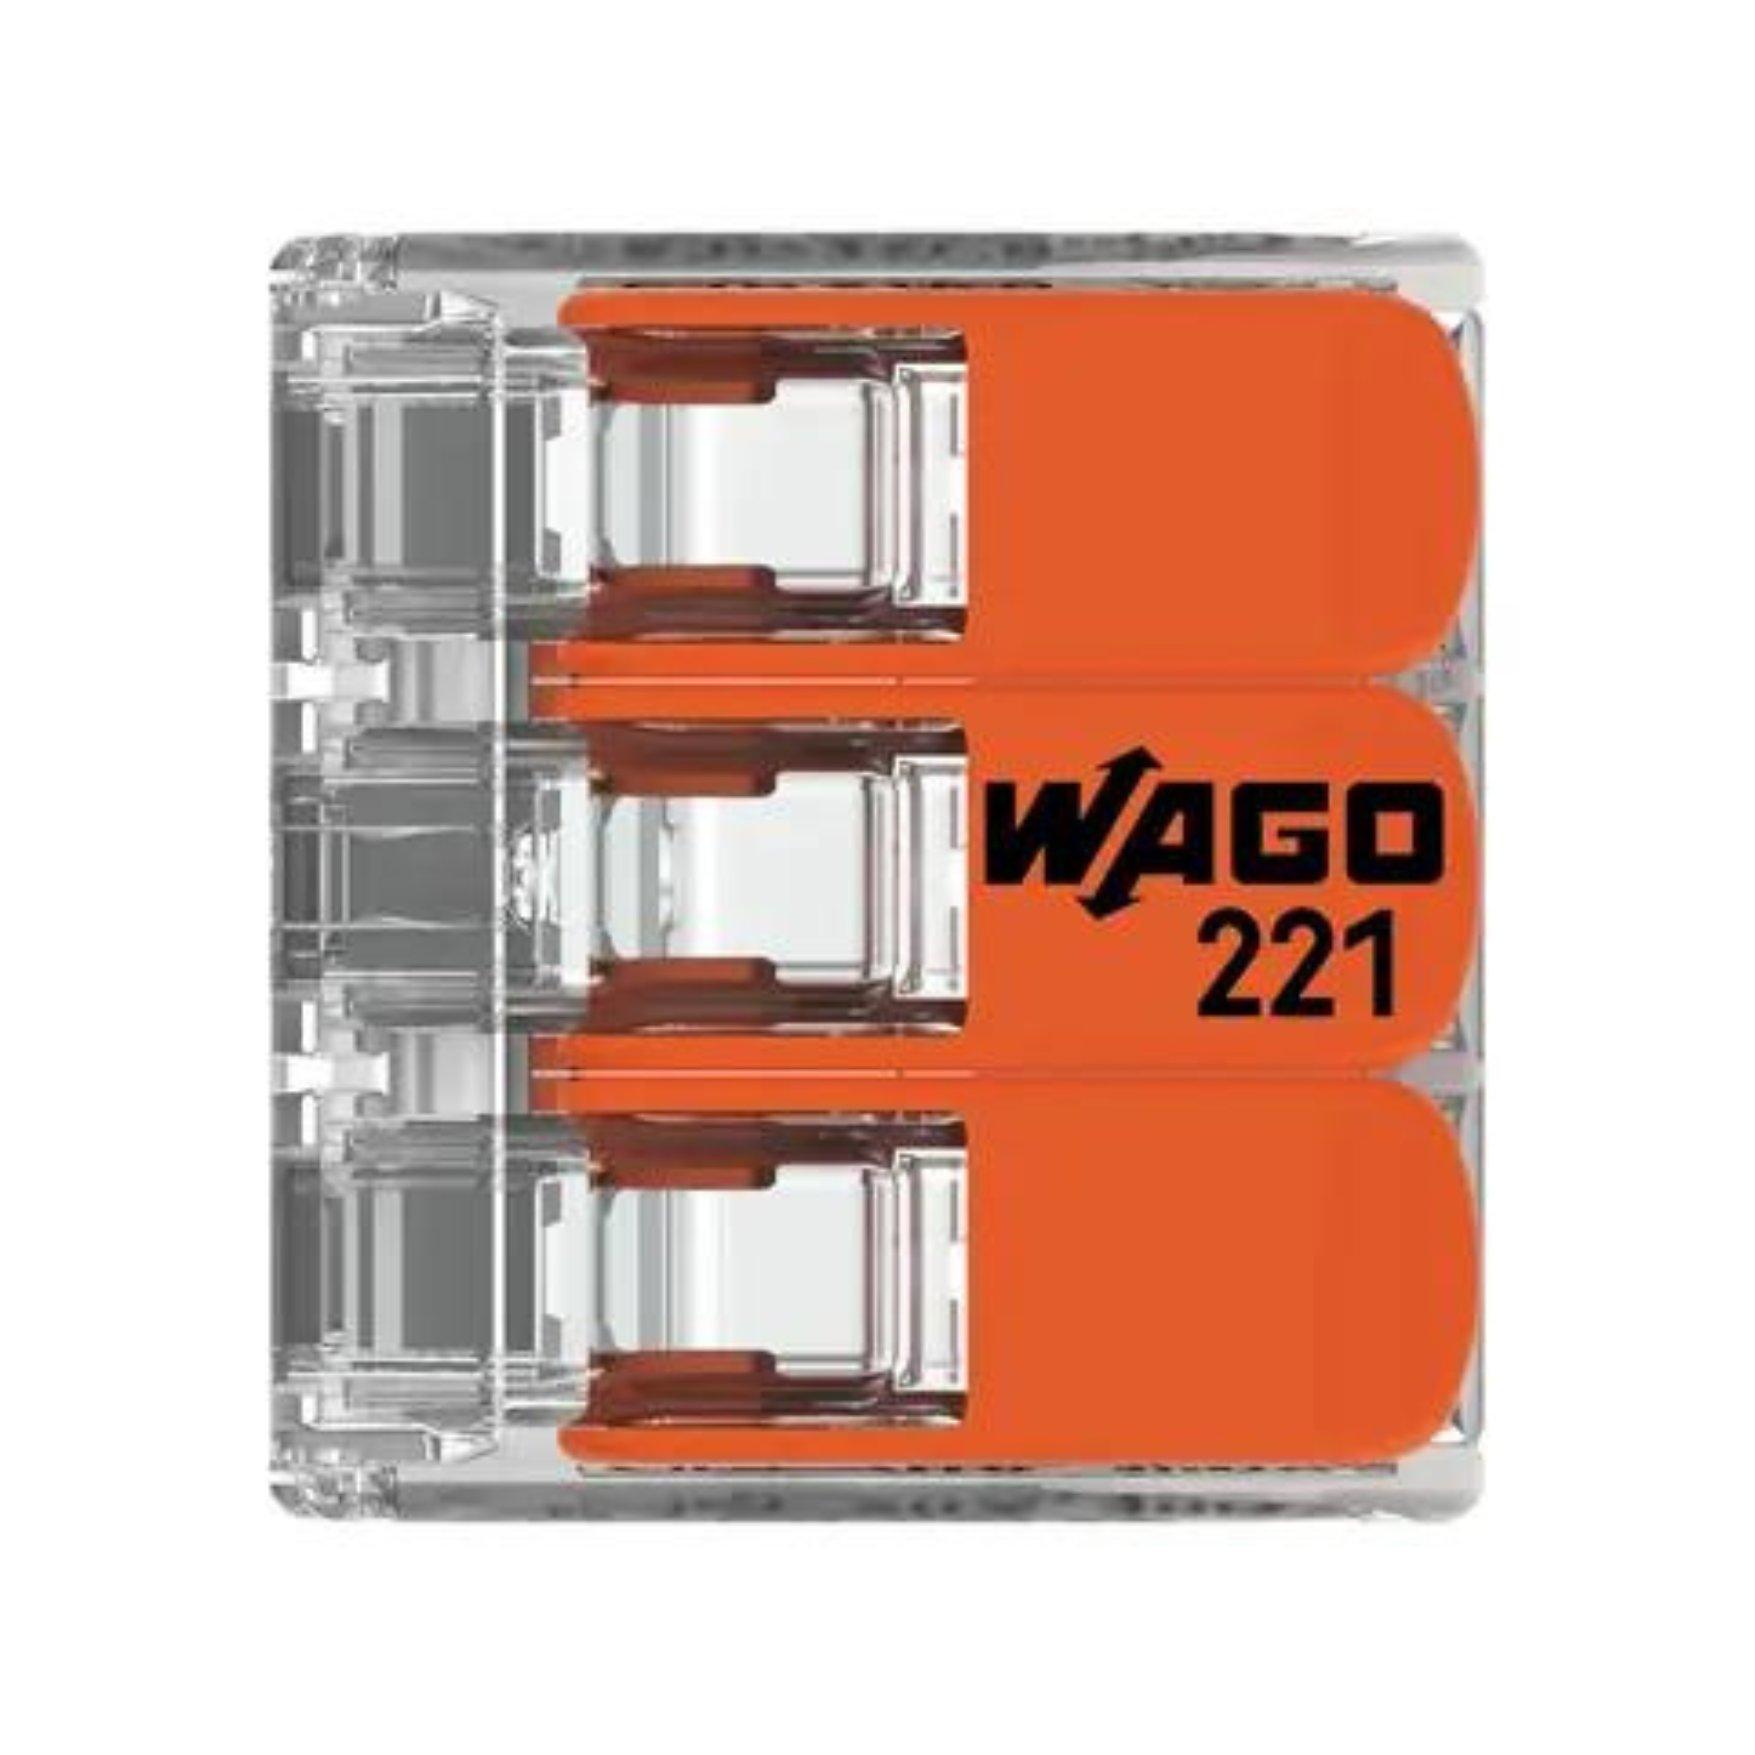 wago/221-413-4